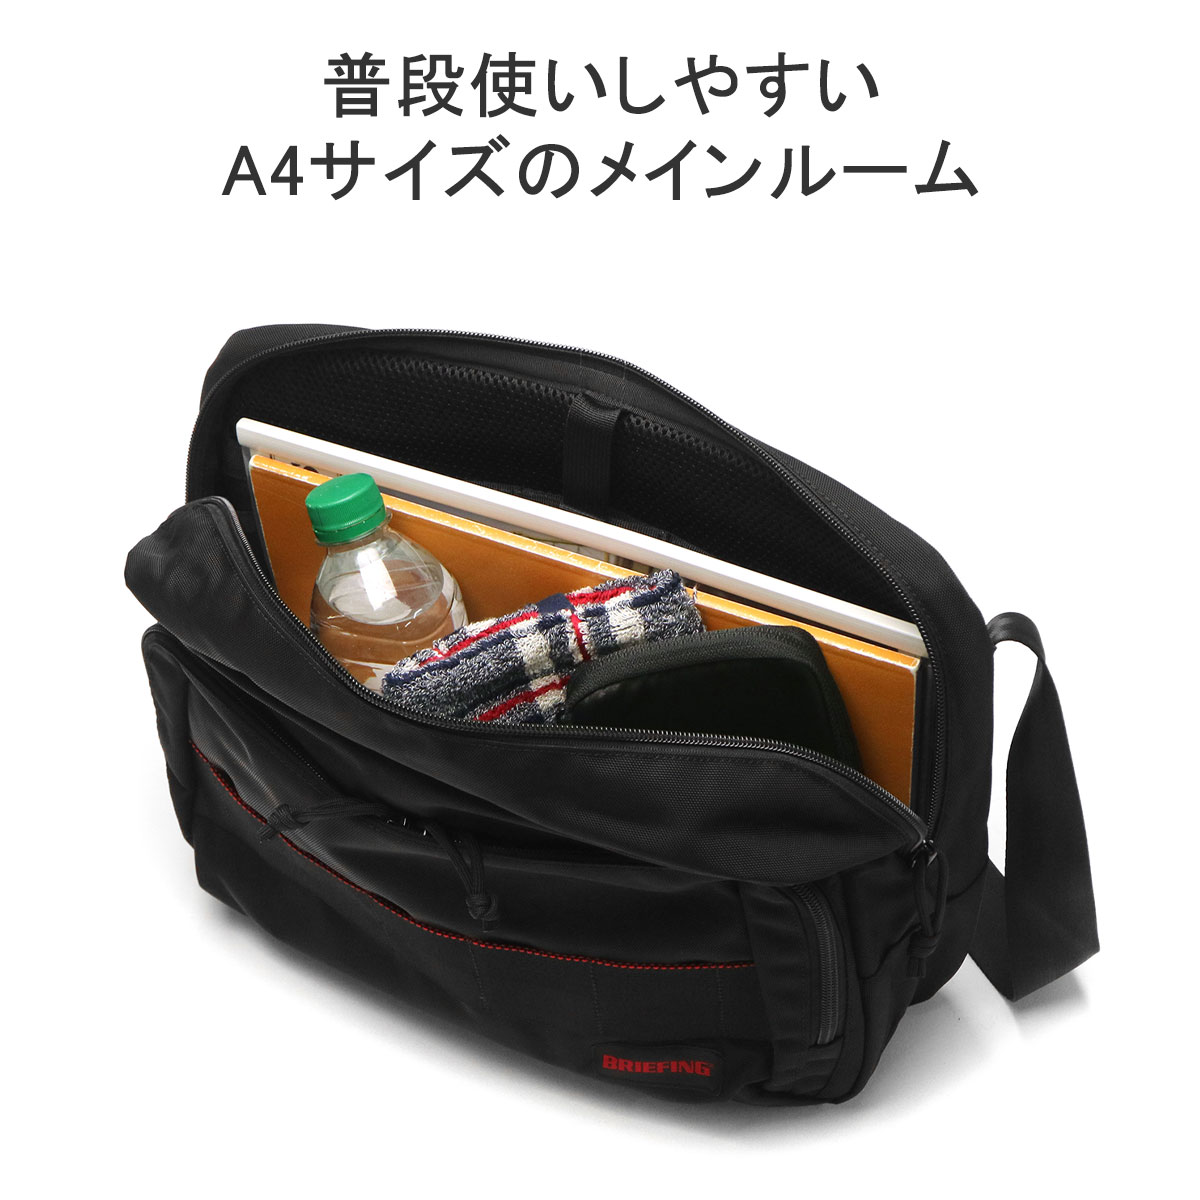 【お得日本製】[超美品]BRIEFINGブリーフィングボディバッグ ショルダーバッグ バッグ